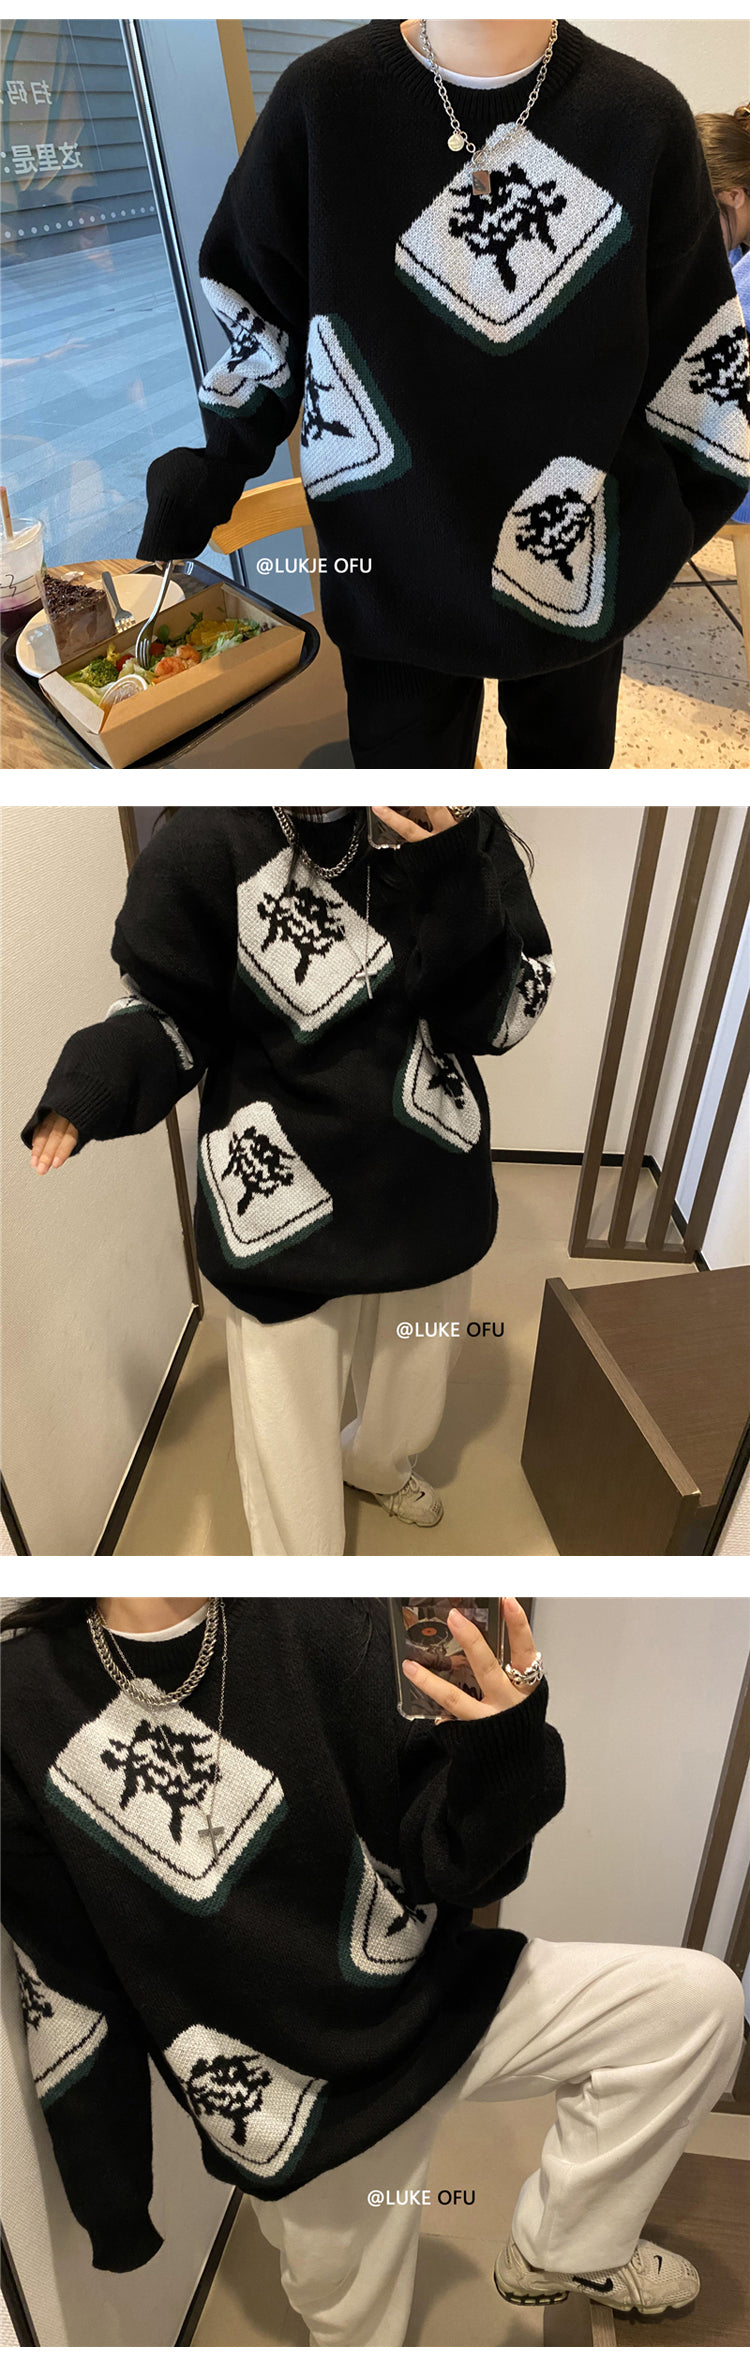 Mahjong tile jacquard knit top BLACK YK0658 CT6864